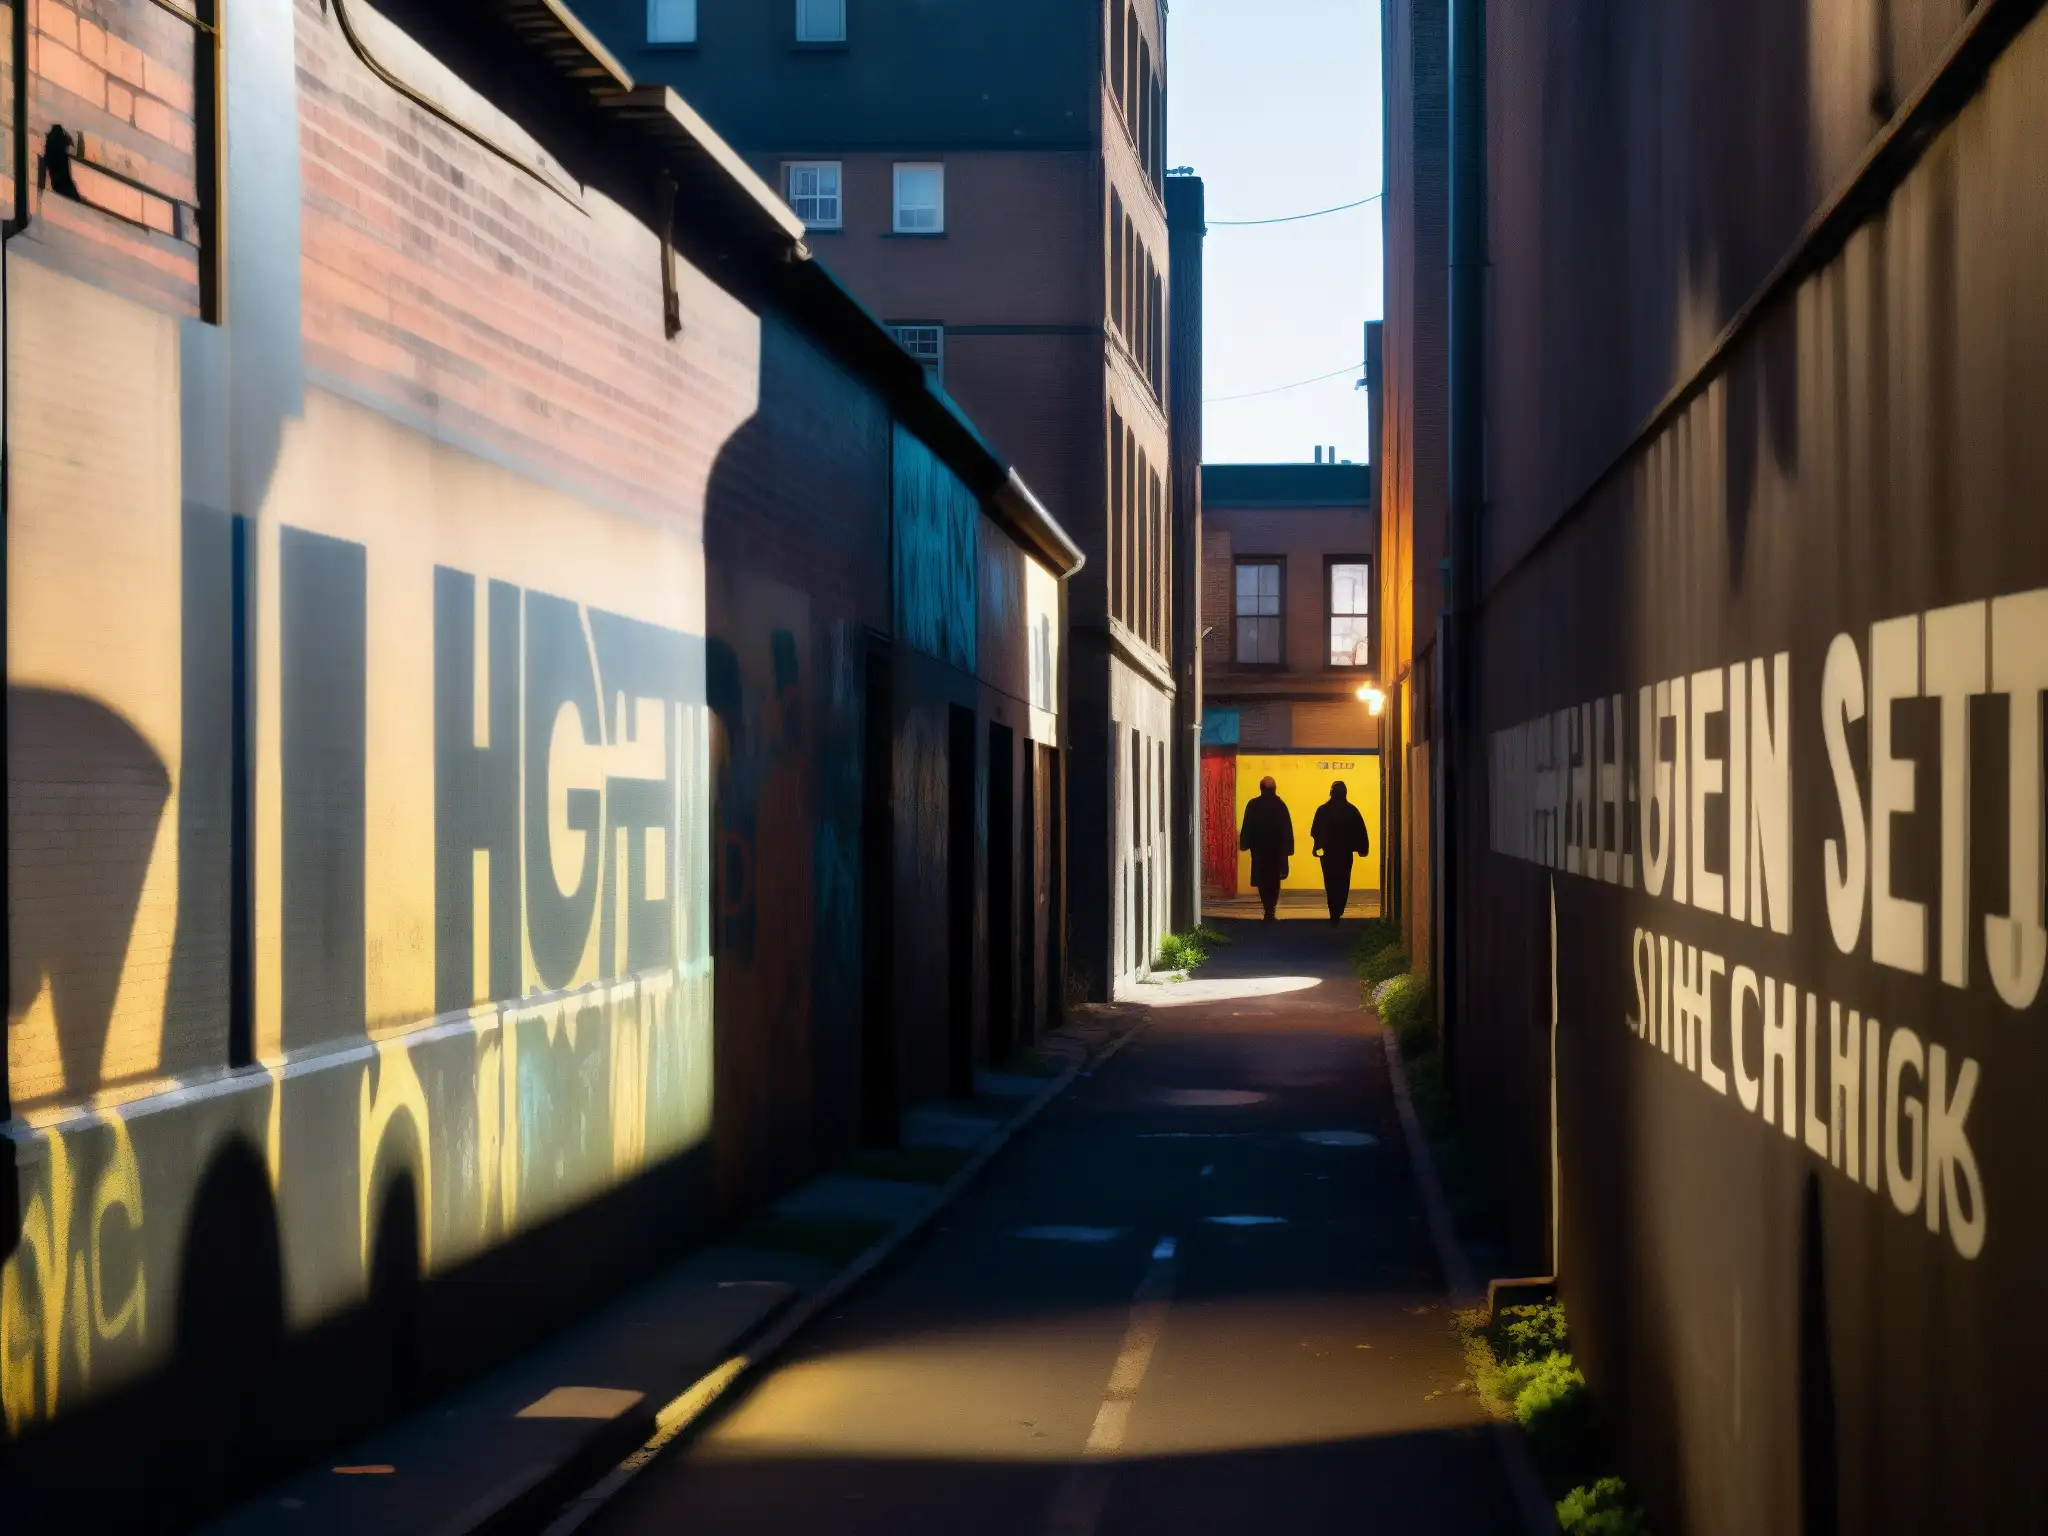 Un callejón urbano sombrío y misterioso, con grafitis, luces tenues y figuras fantasmales